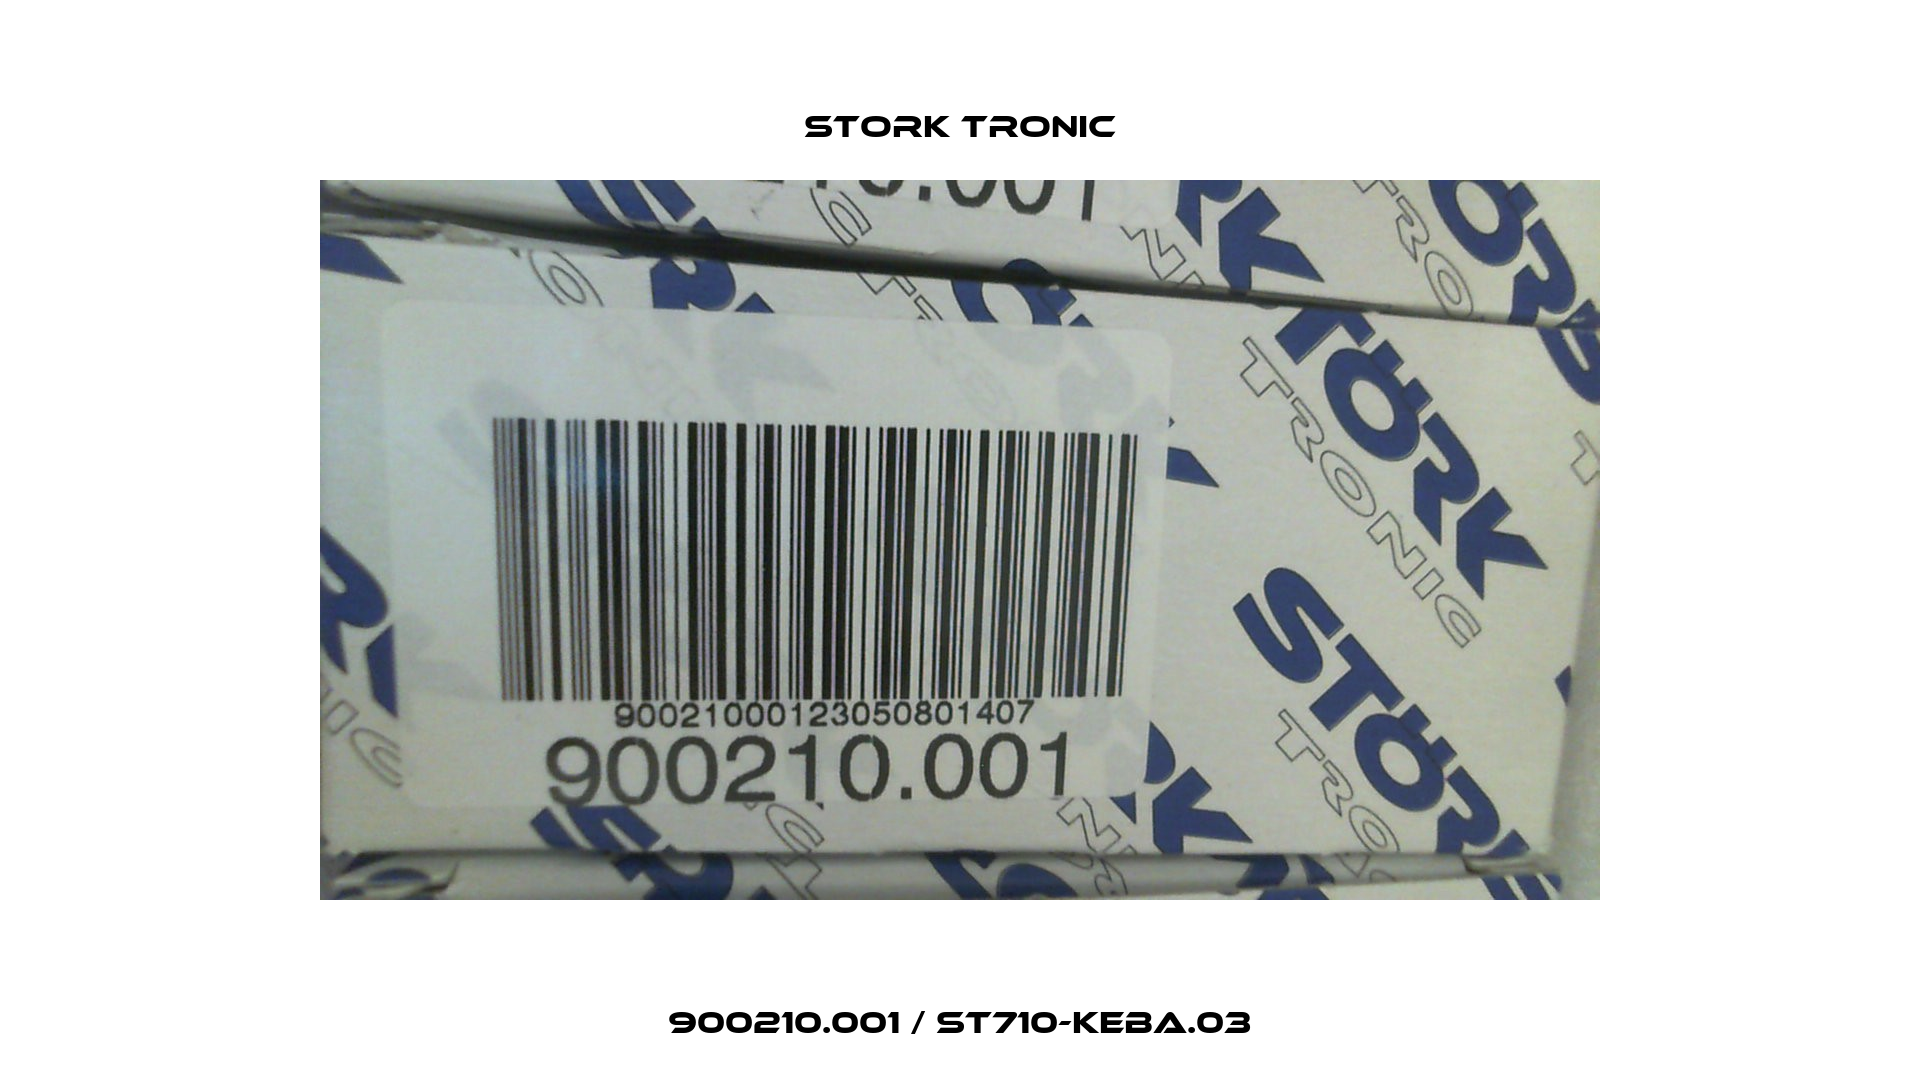 900210.001 / ST710-KEBA.03 Stork tronic